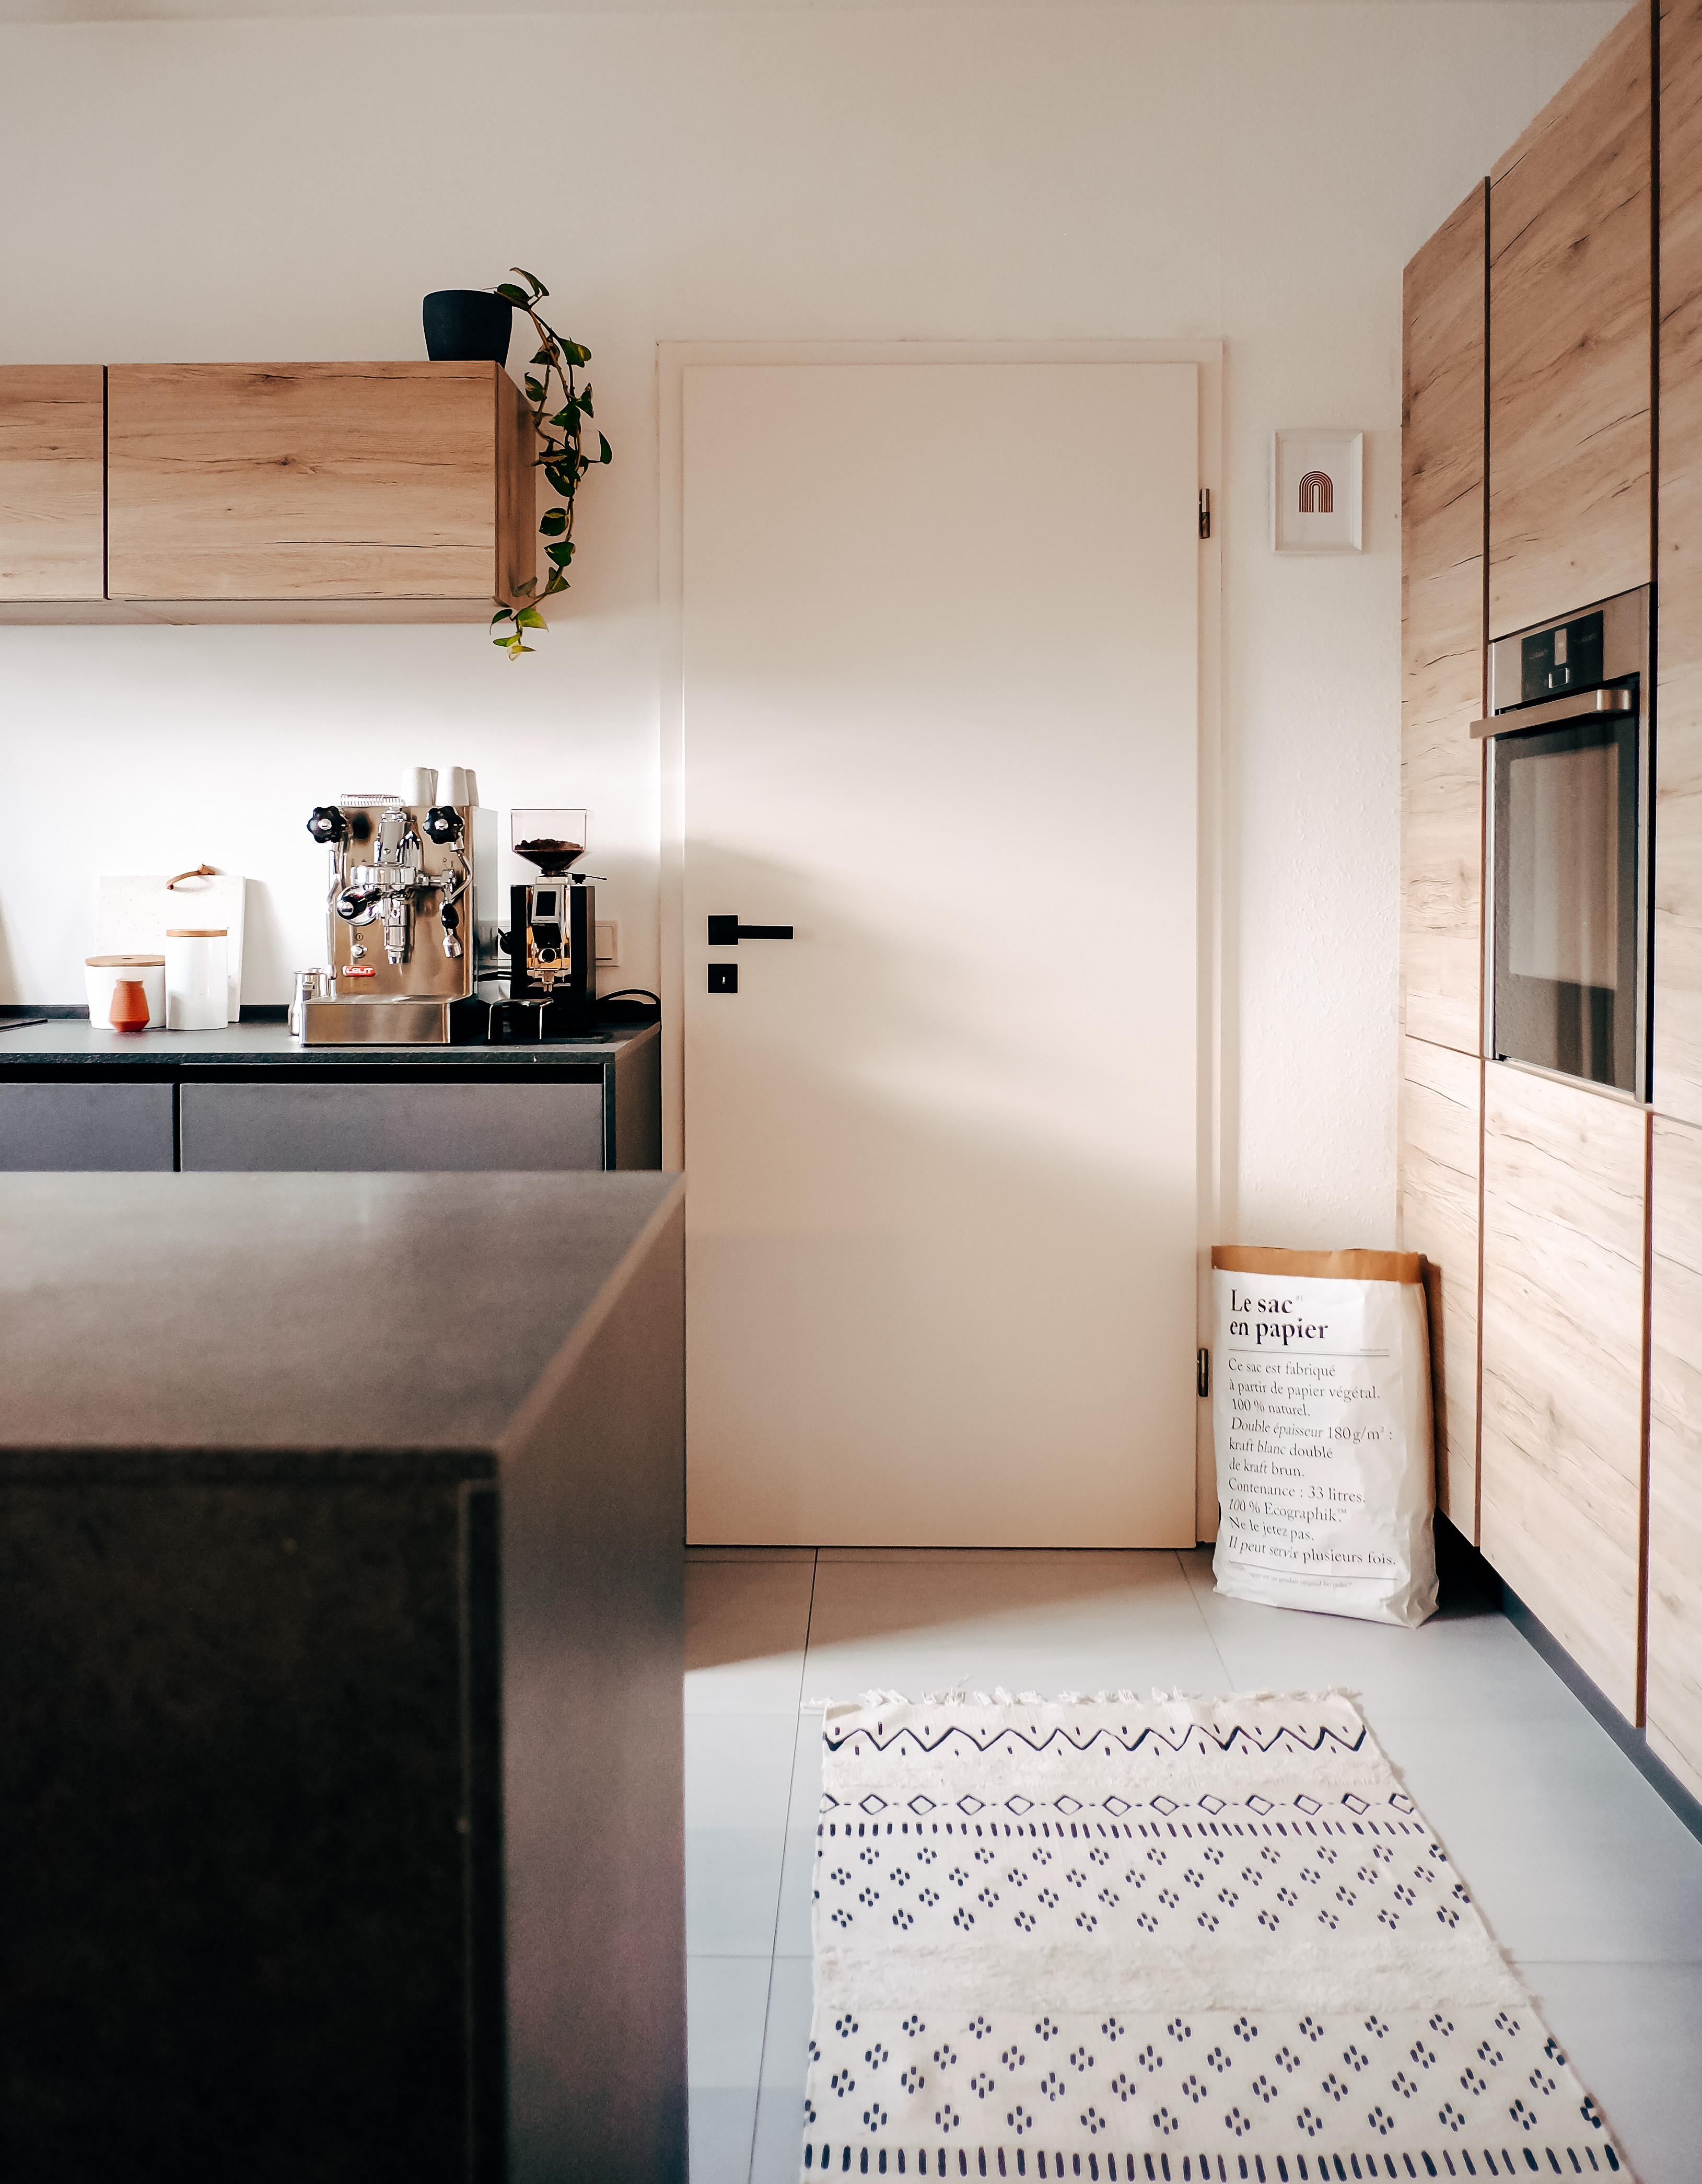 Kaffee und Küche gehören zusammen. #kitchen #blackkitchen #kitchendesign #coffeelover #coffee